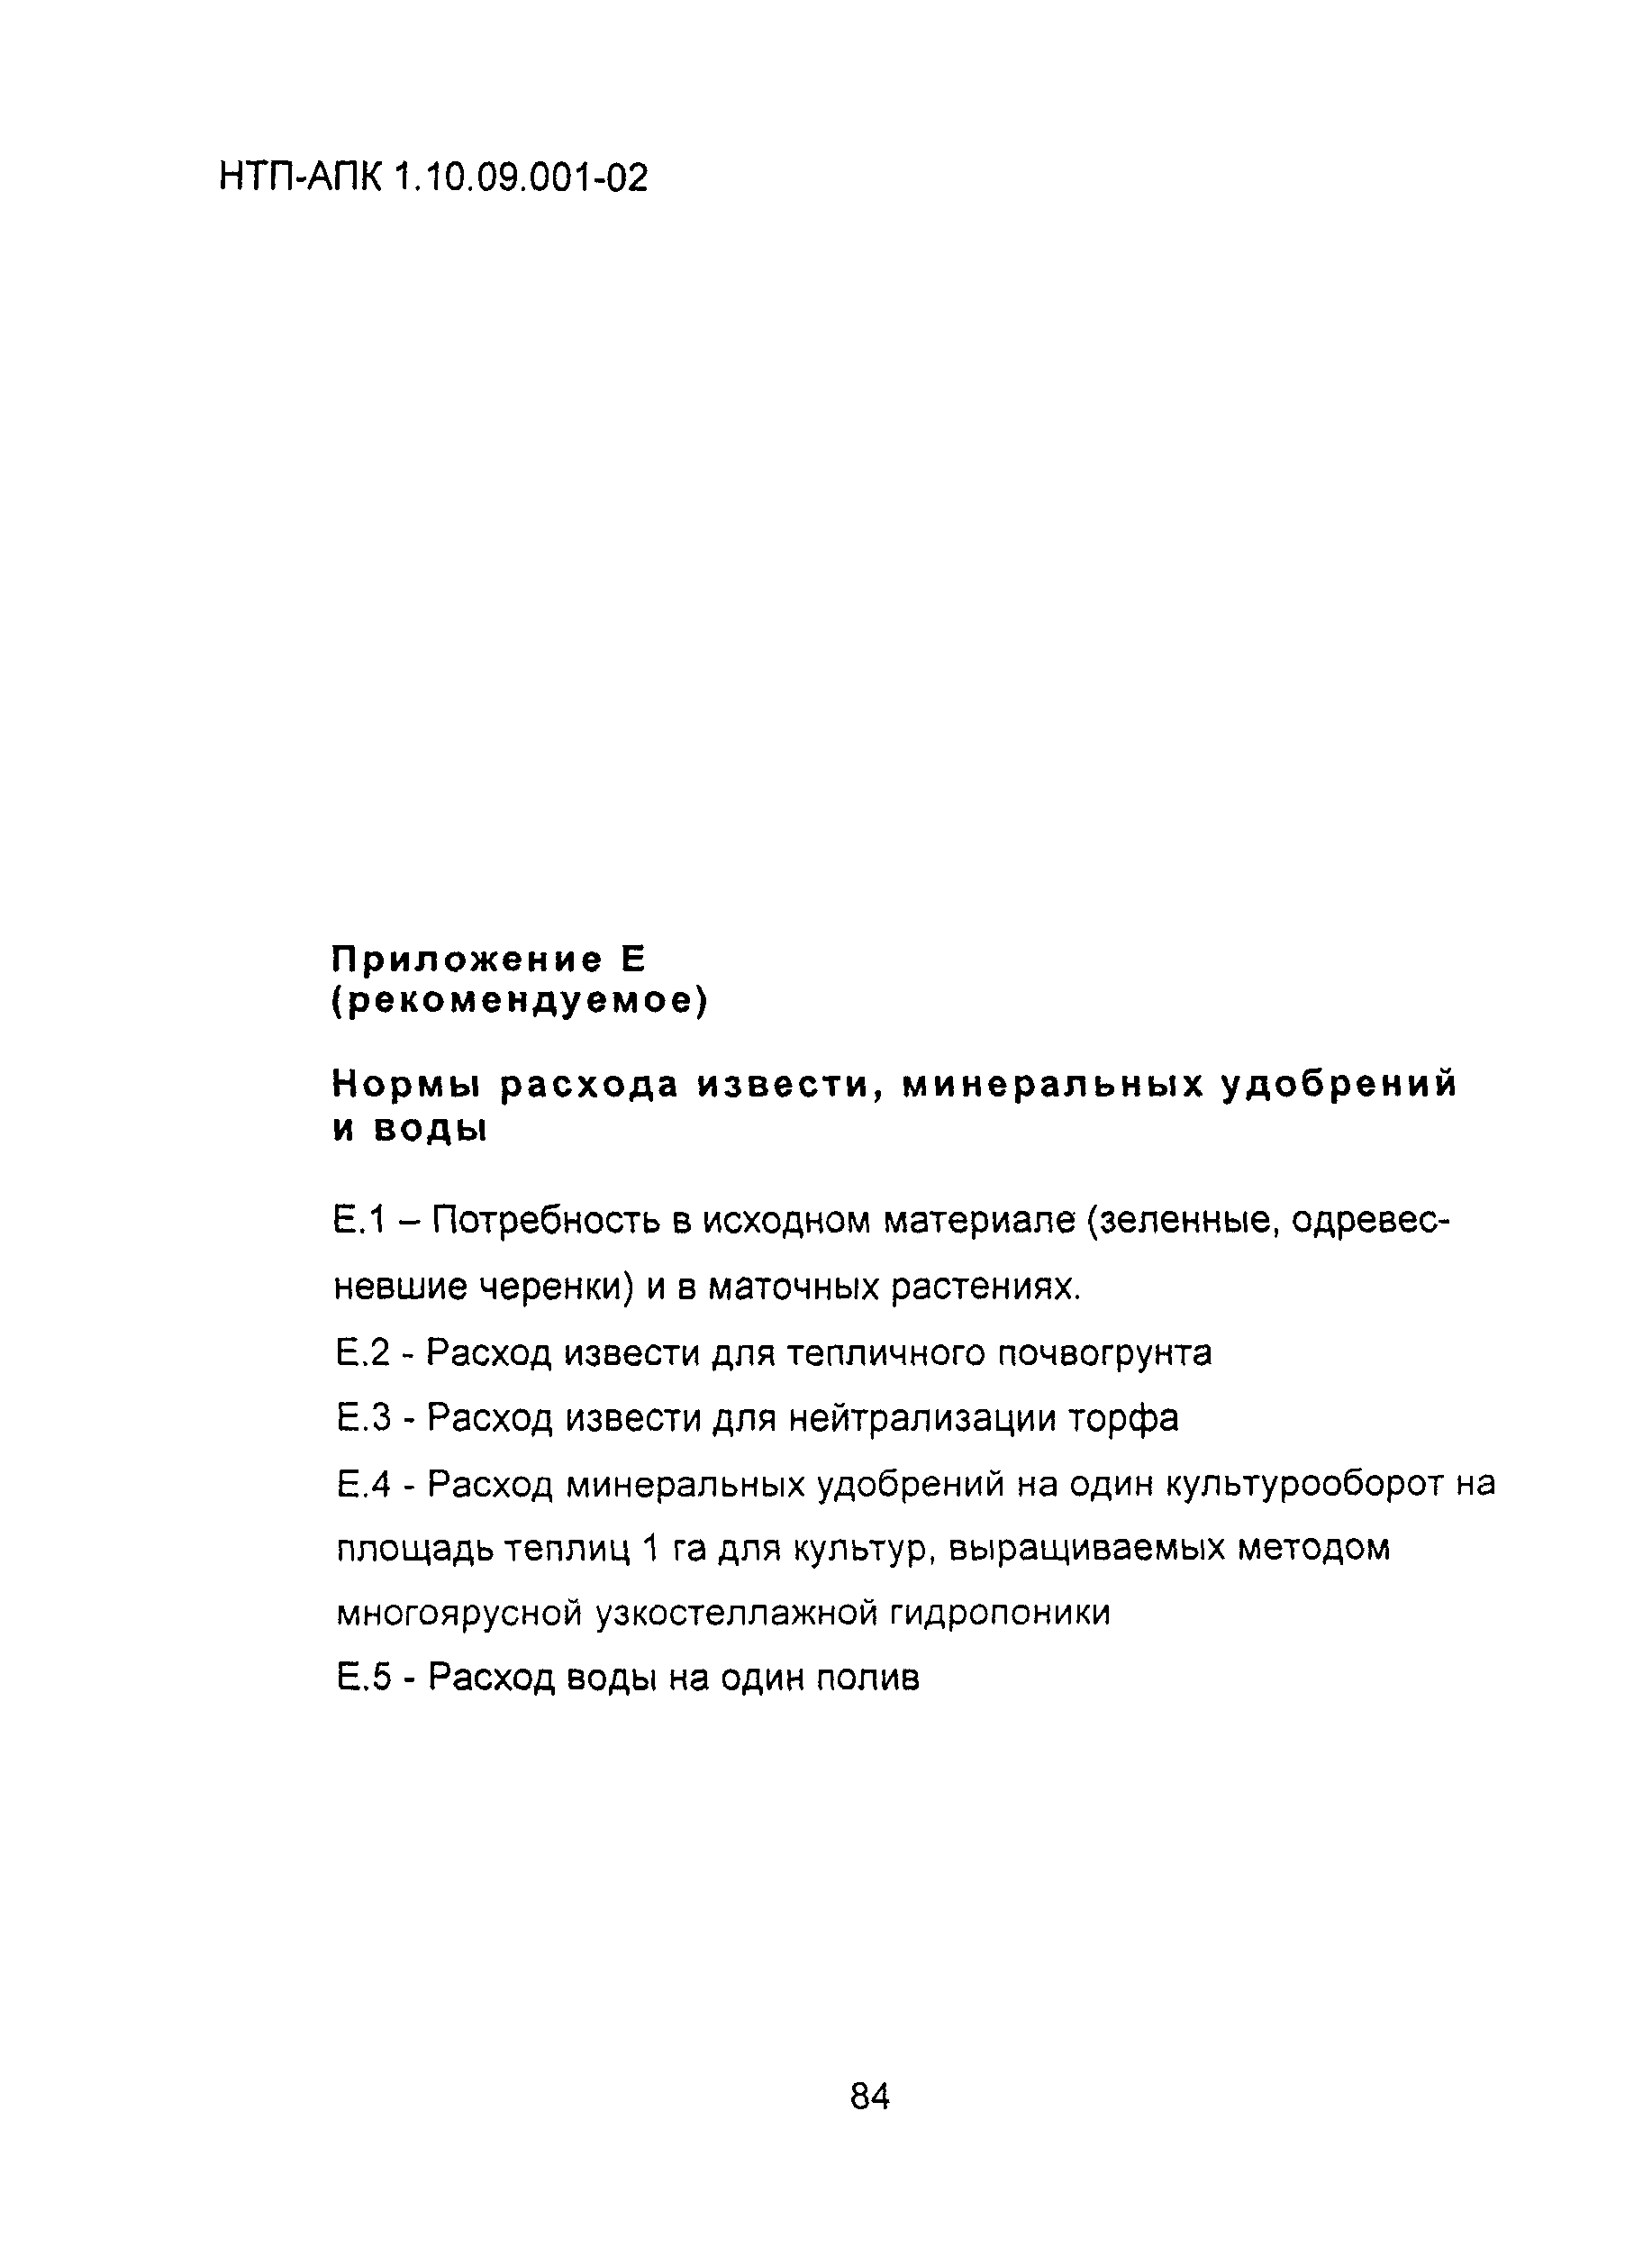 НТП АПК 1.10.09.001-02